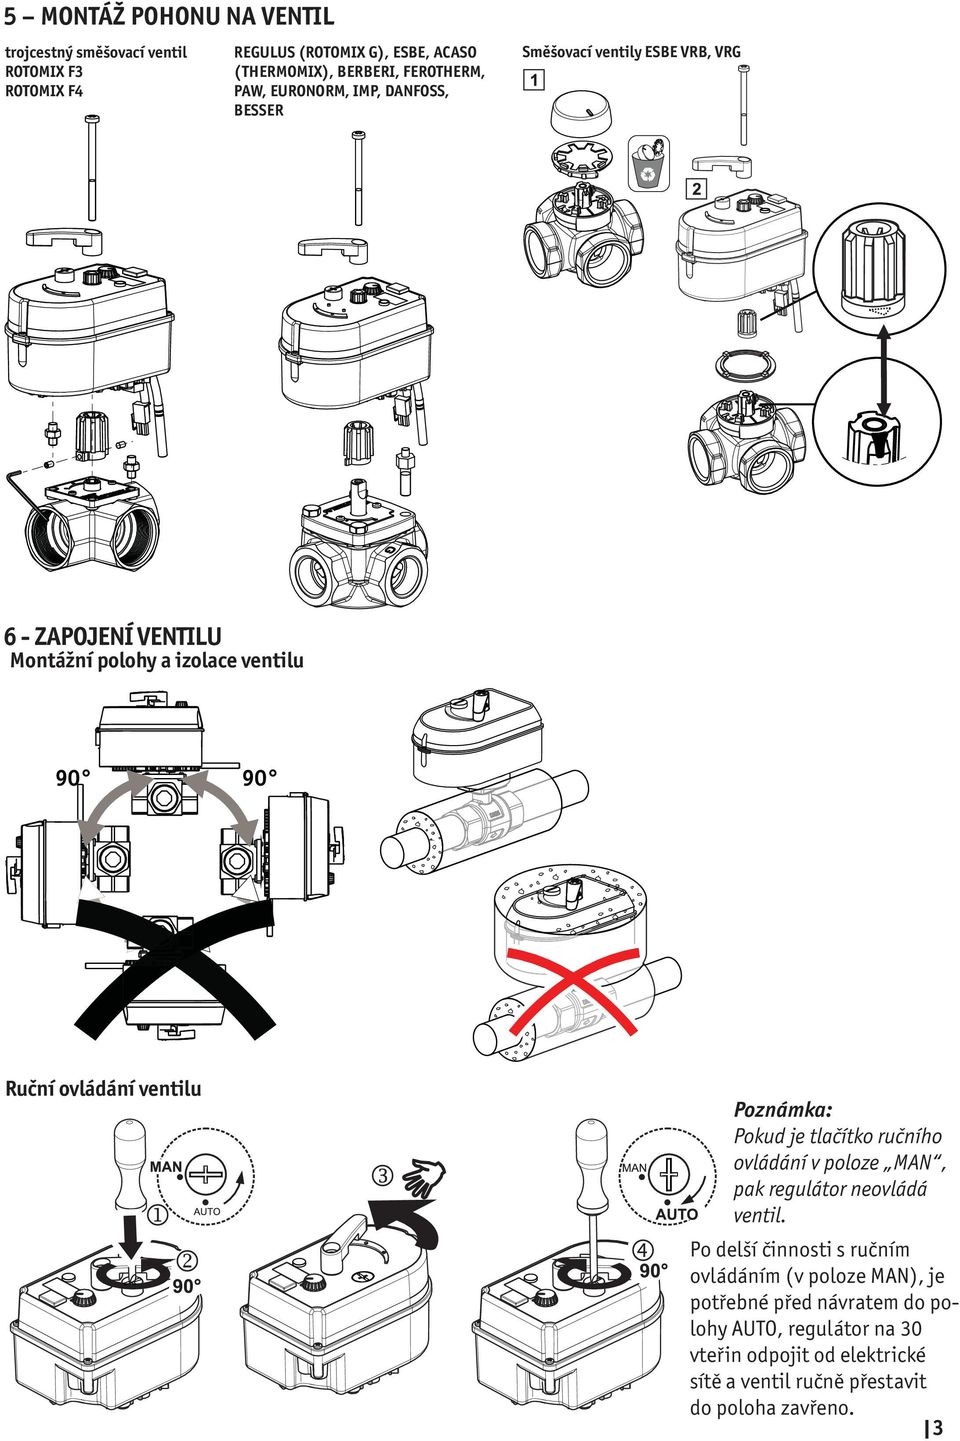 ventilu Poznámka: Pokud je tlačítko ručního ovládání v poloze MAN, pak regulátor neovládá ventil.